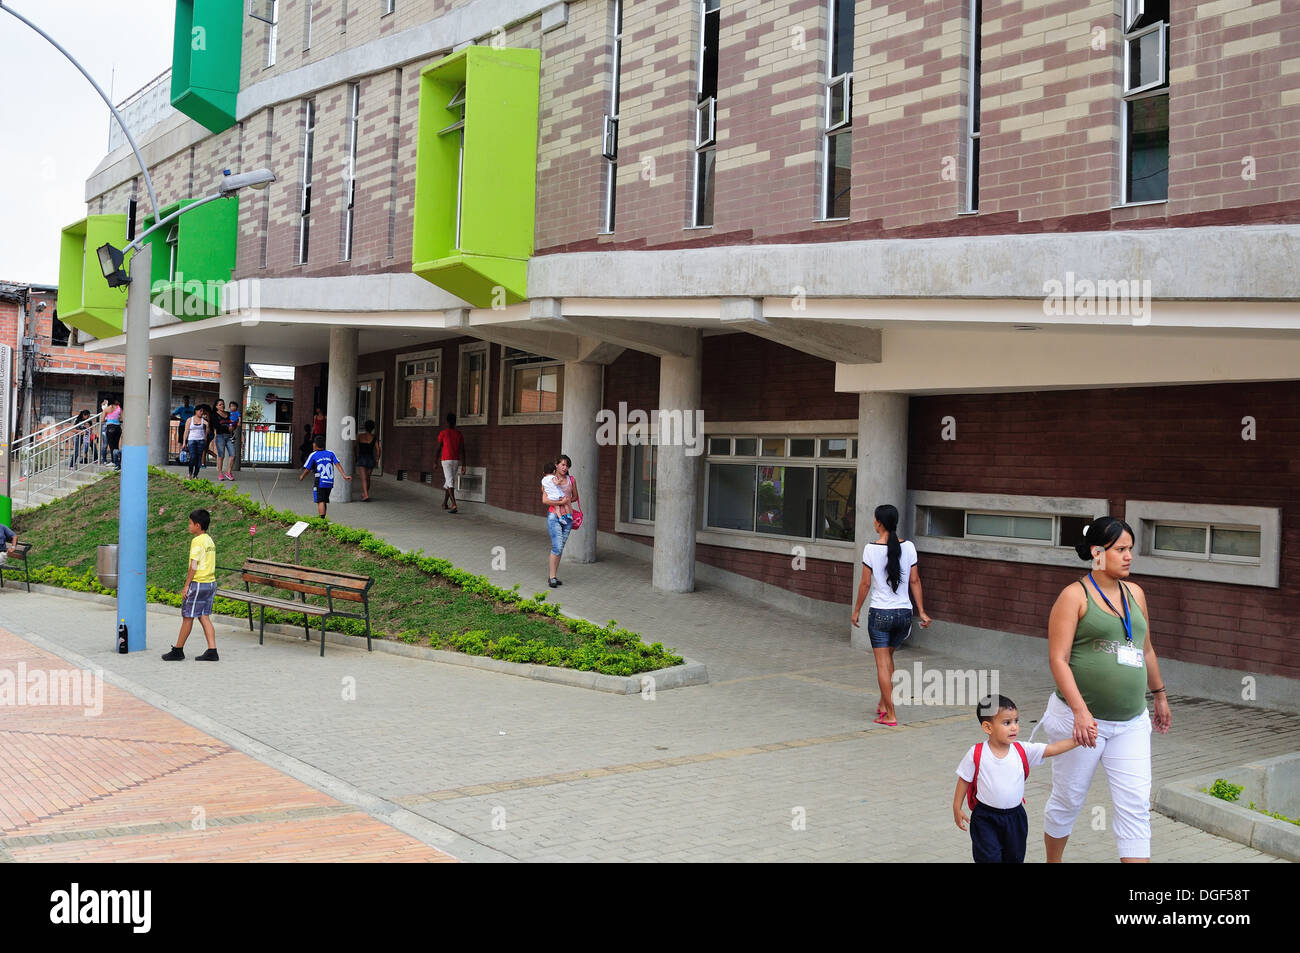 Buen comienzo de kindergarten - distrito de Moravia en Medellín .Departamento de Antioquia. COLOMBIA Foto de stock